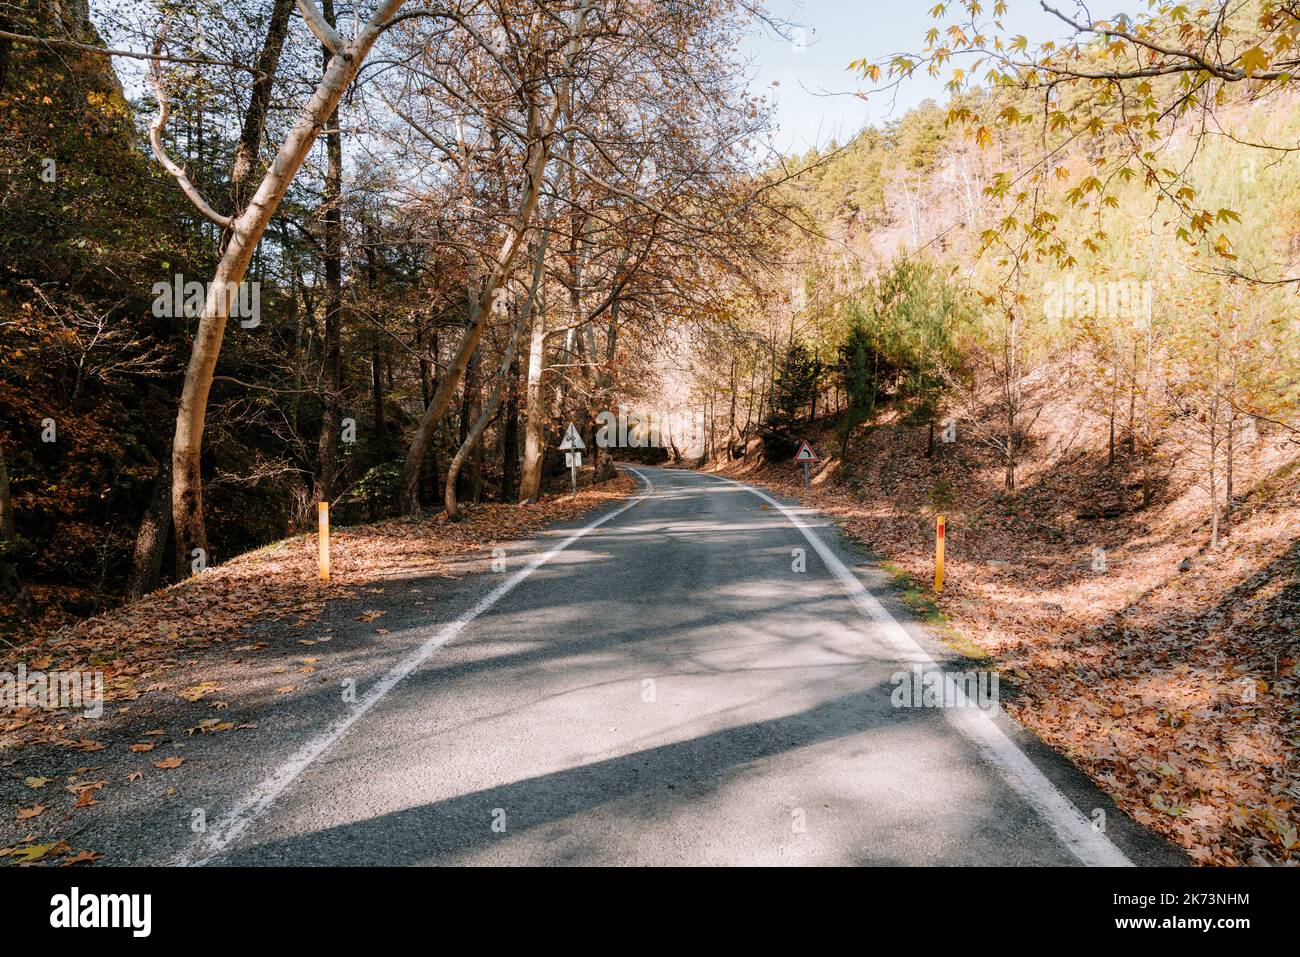 Eine ländliche Landstraße, Weg in schönen und ruhigen Wald in der Herbstsaison. Hochwertige Fotos Stockfoto